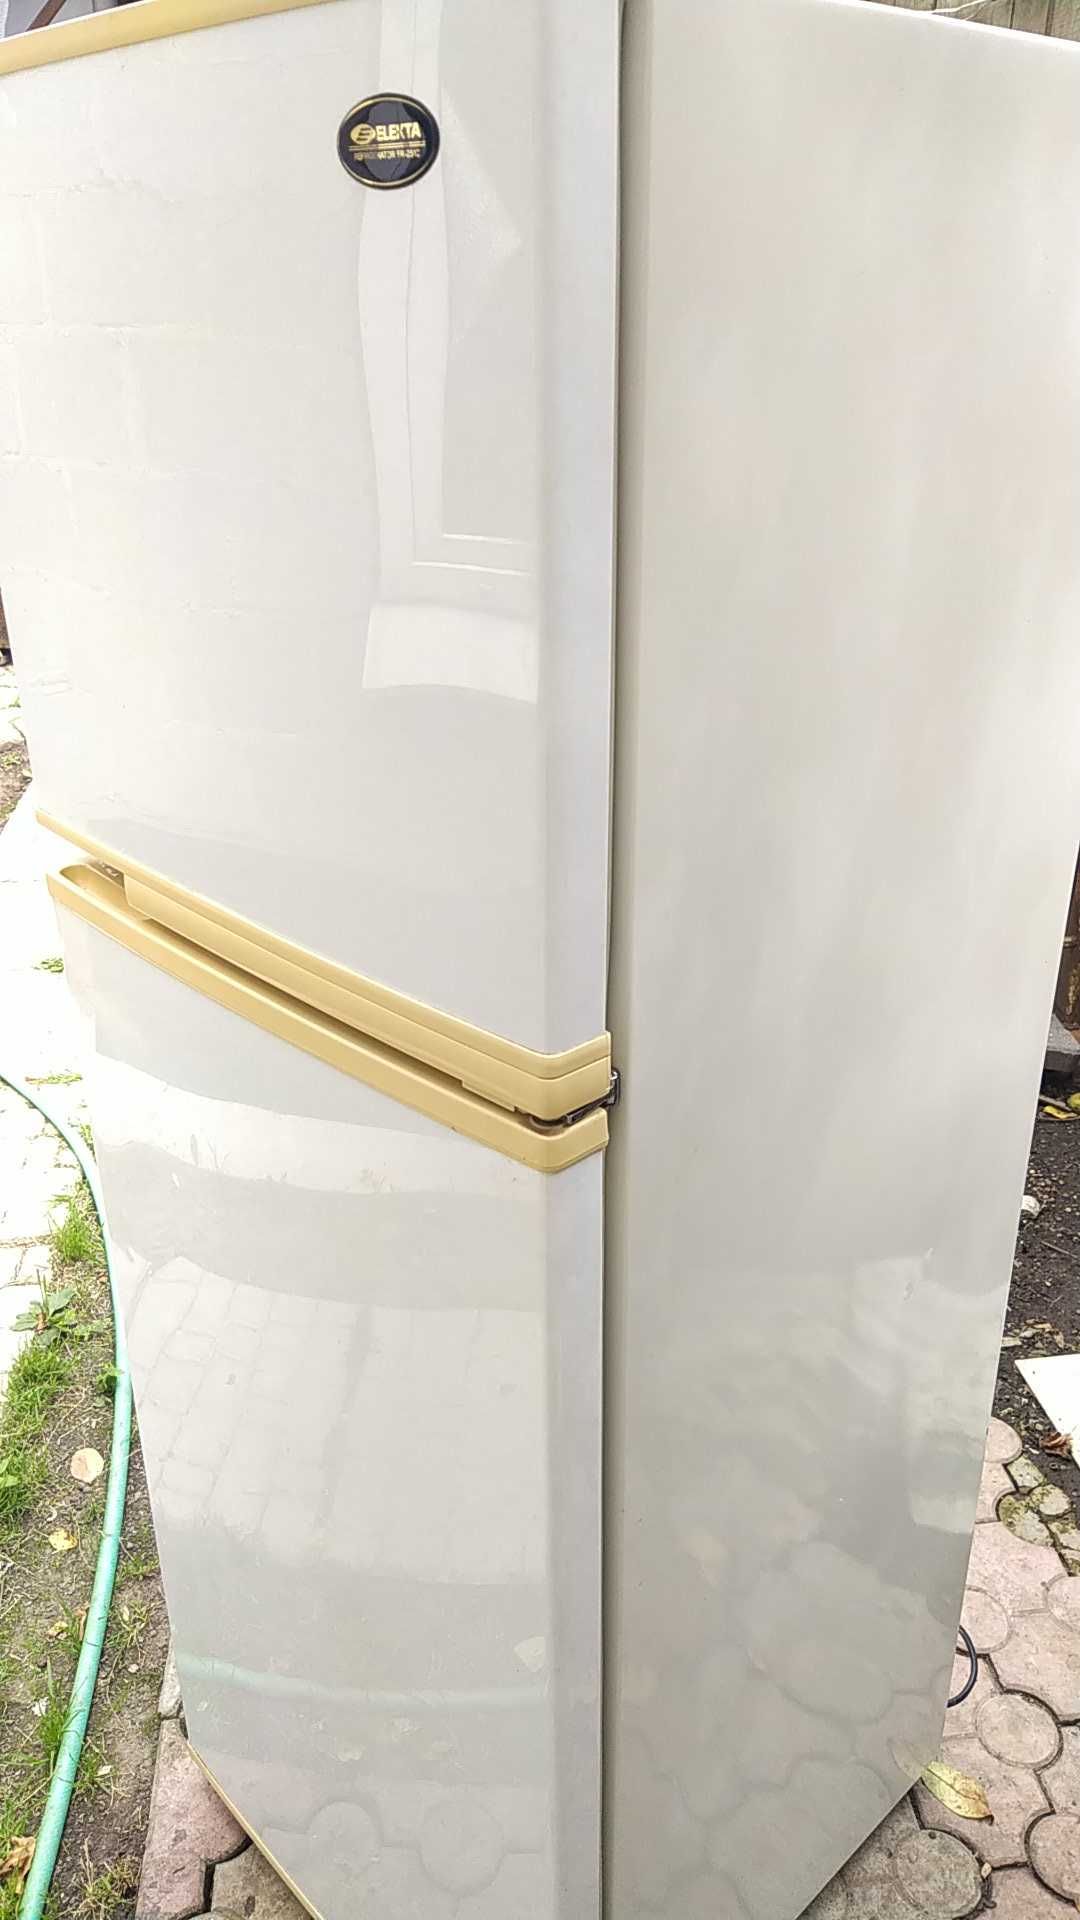 Японский холодильник ELEKTA, No-Frost, рабочий, надёжный. выс. 1.5м.